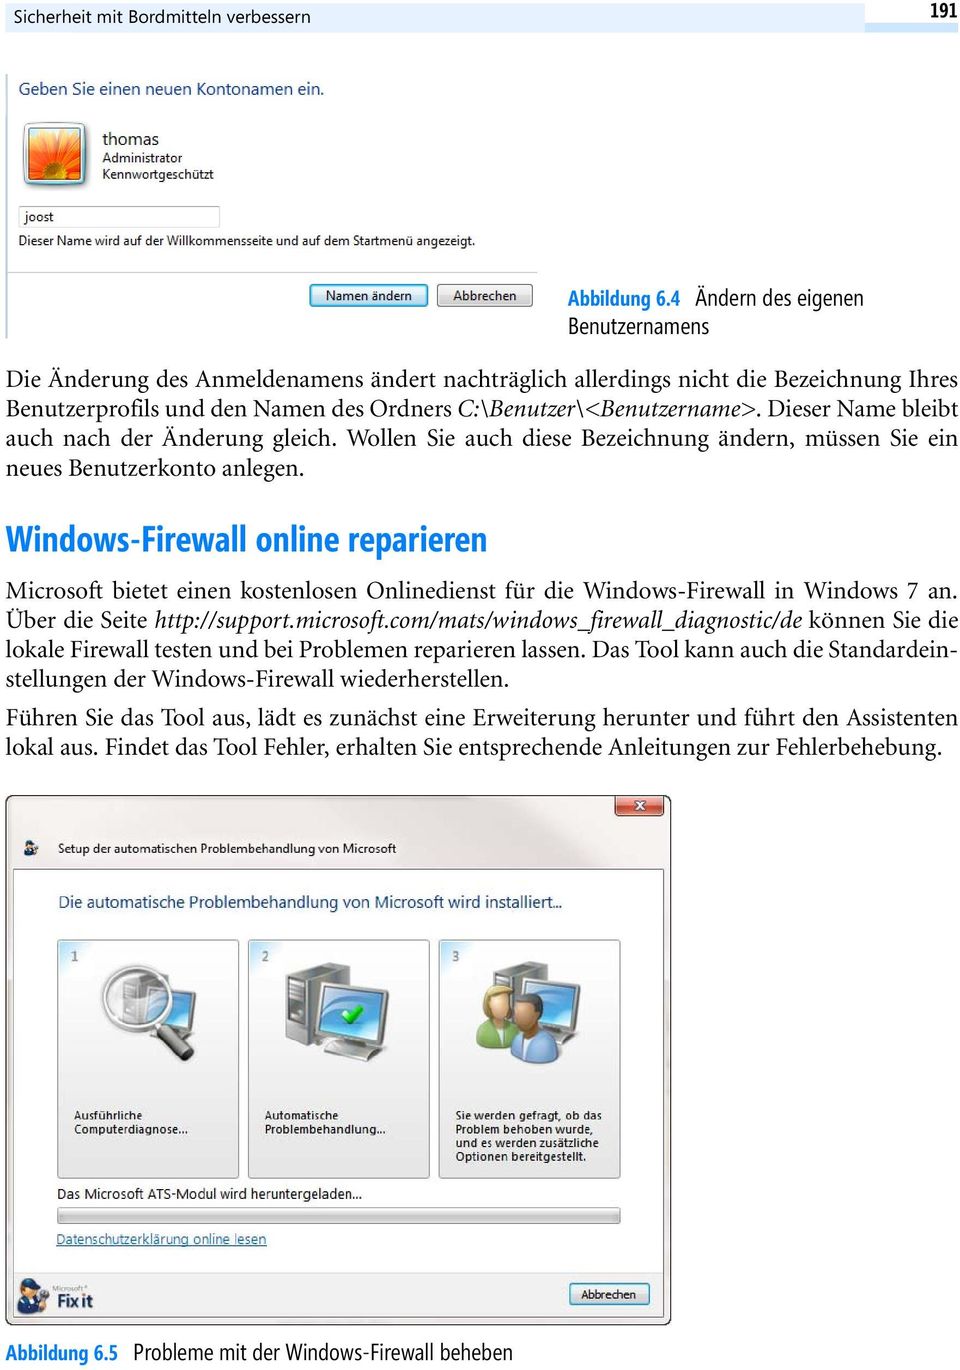 Windows-Firewall online reparieren Abbildung 6.4 Ändern des eigenen Benutzernamens Microsoft bietet einen kostenlosen Onlinedienst für die Windows-Firewall in Windows 7 an.